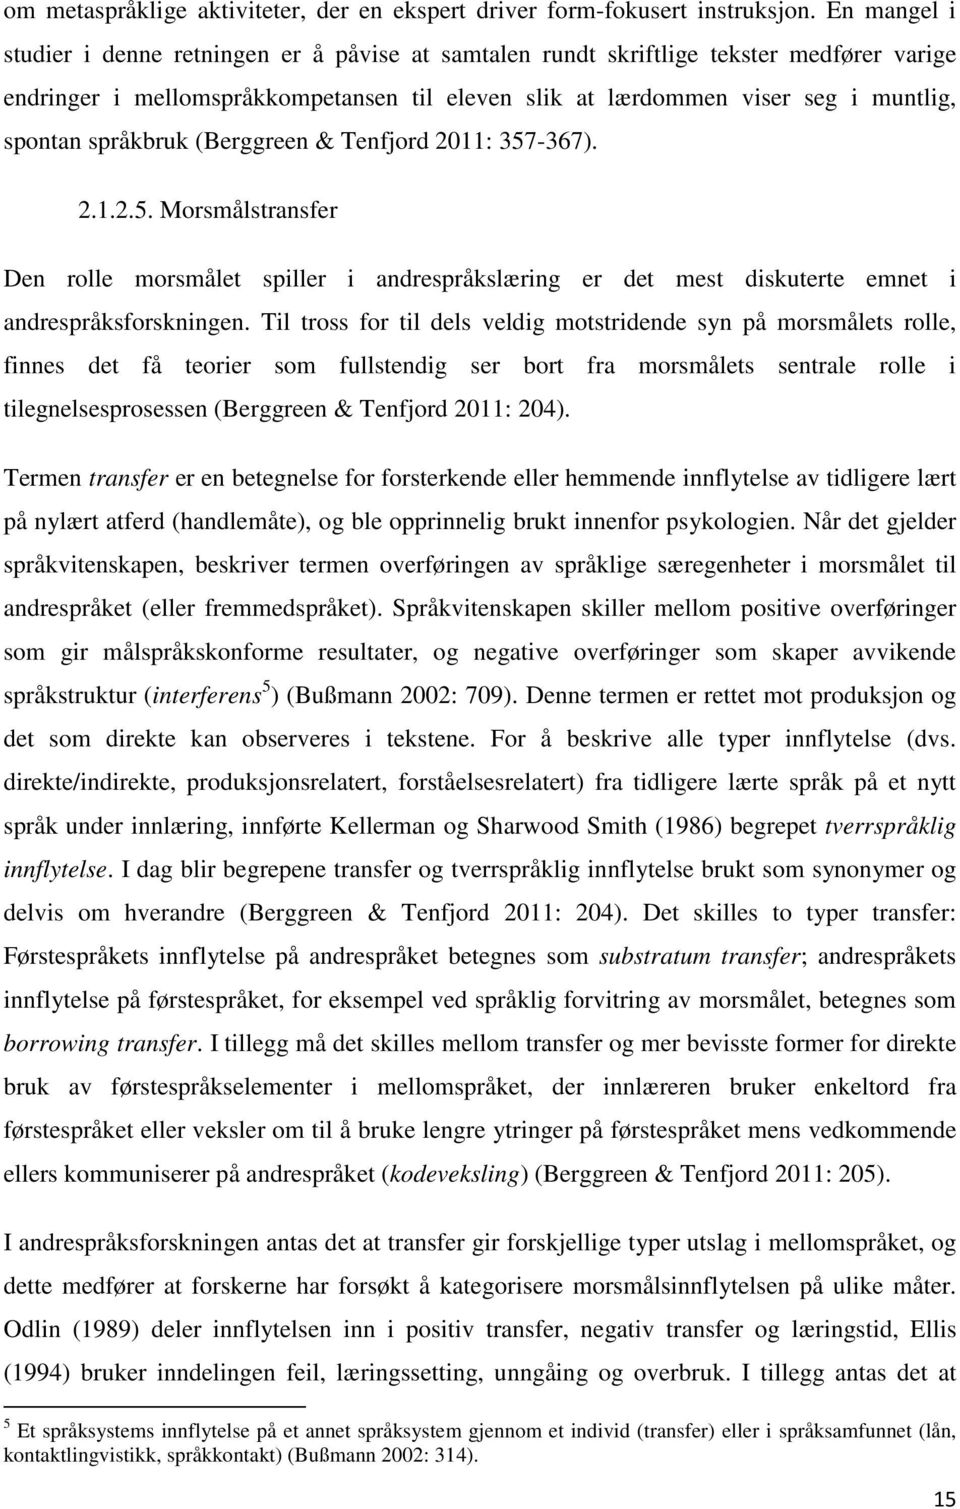 språkbruk (Berggreen & Tenfjord 2011: 357-367). 2.1.2.5. Morsmålstransfer Den rolle morsmålet spiller i andrespråkslæring er det mest diskuterte emnet i andrespråksforskningen.